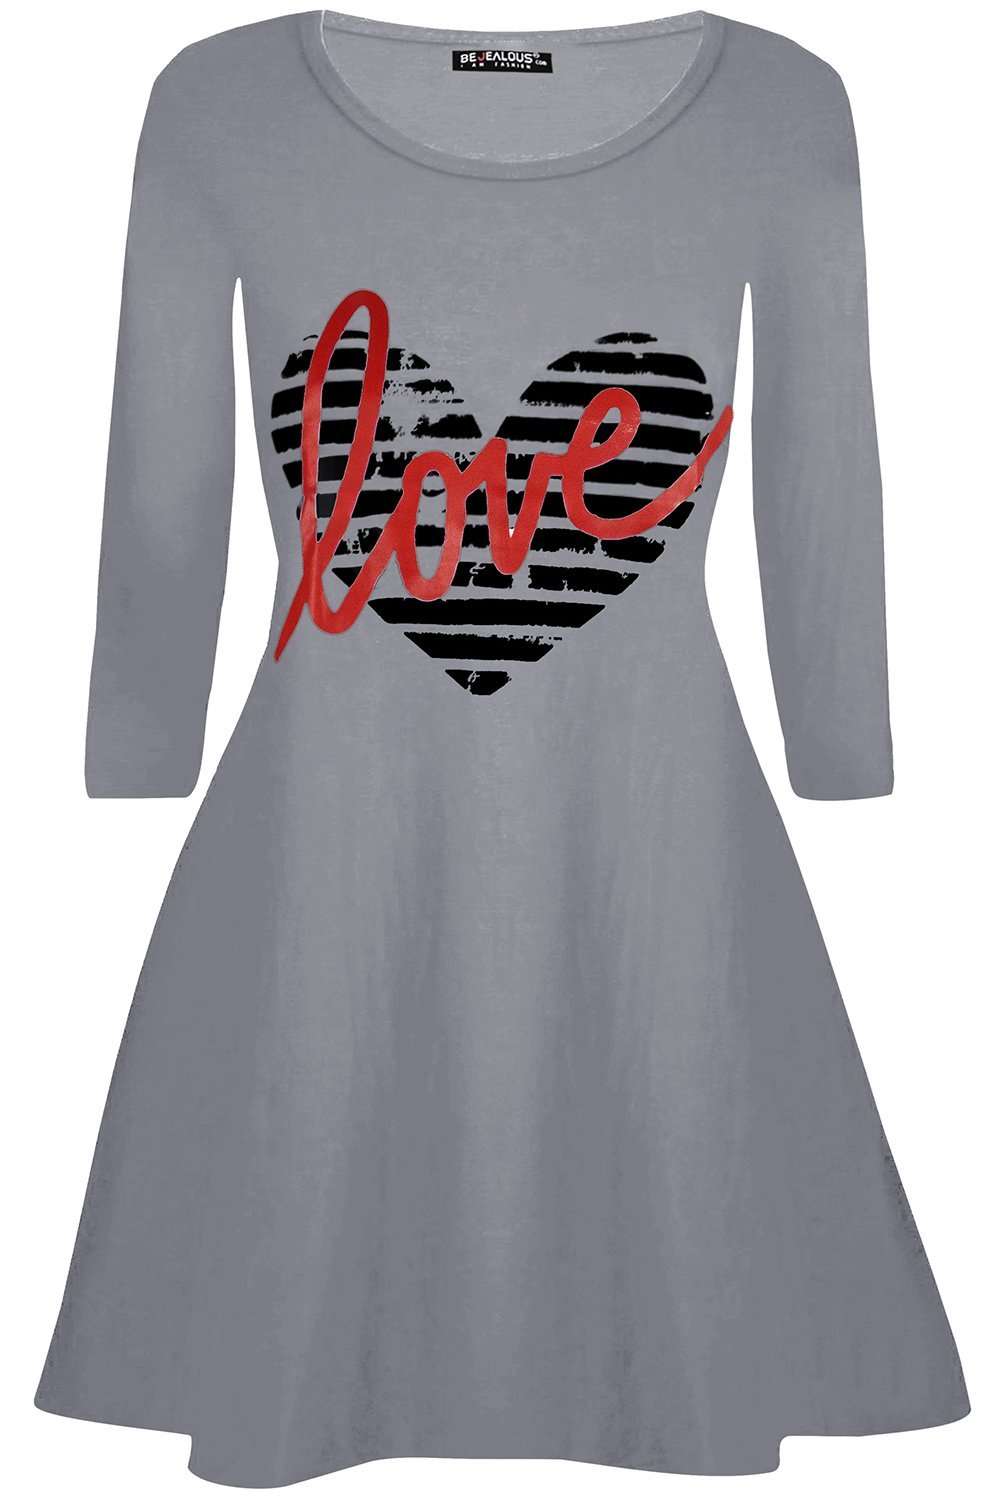 Fran Long Sleeve Heart Print Swing Dress - bejealous-com